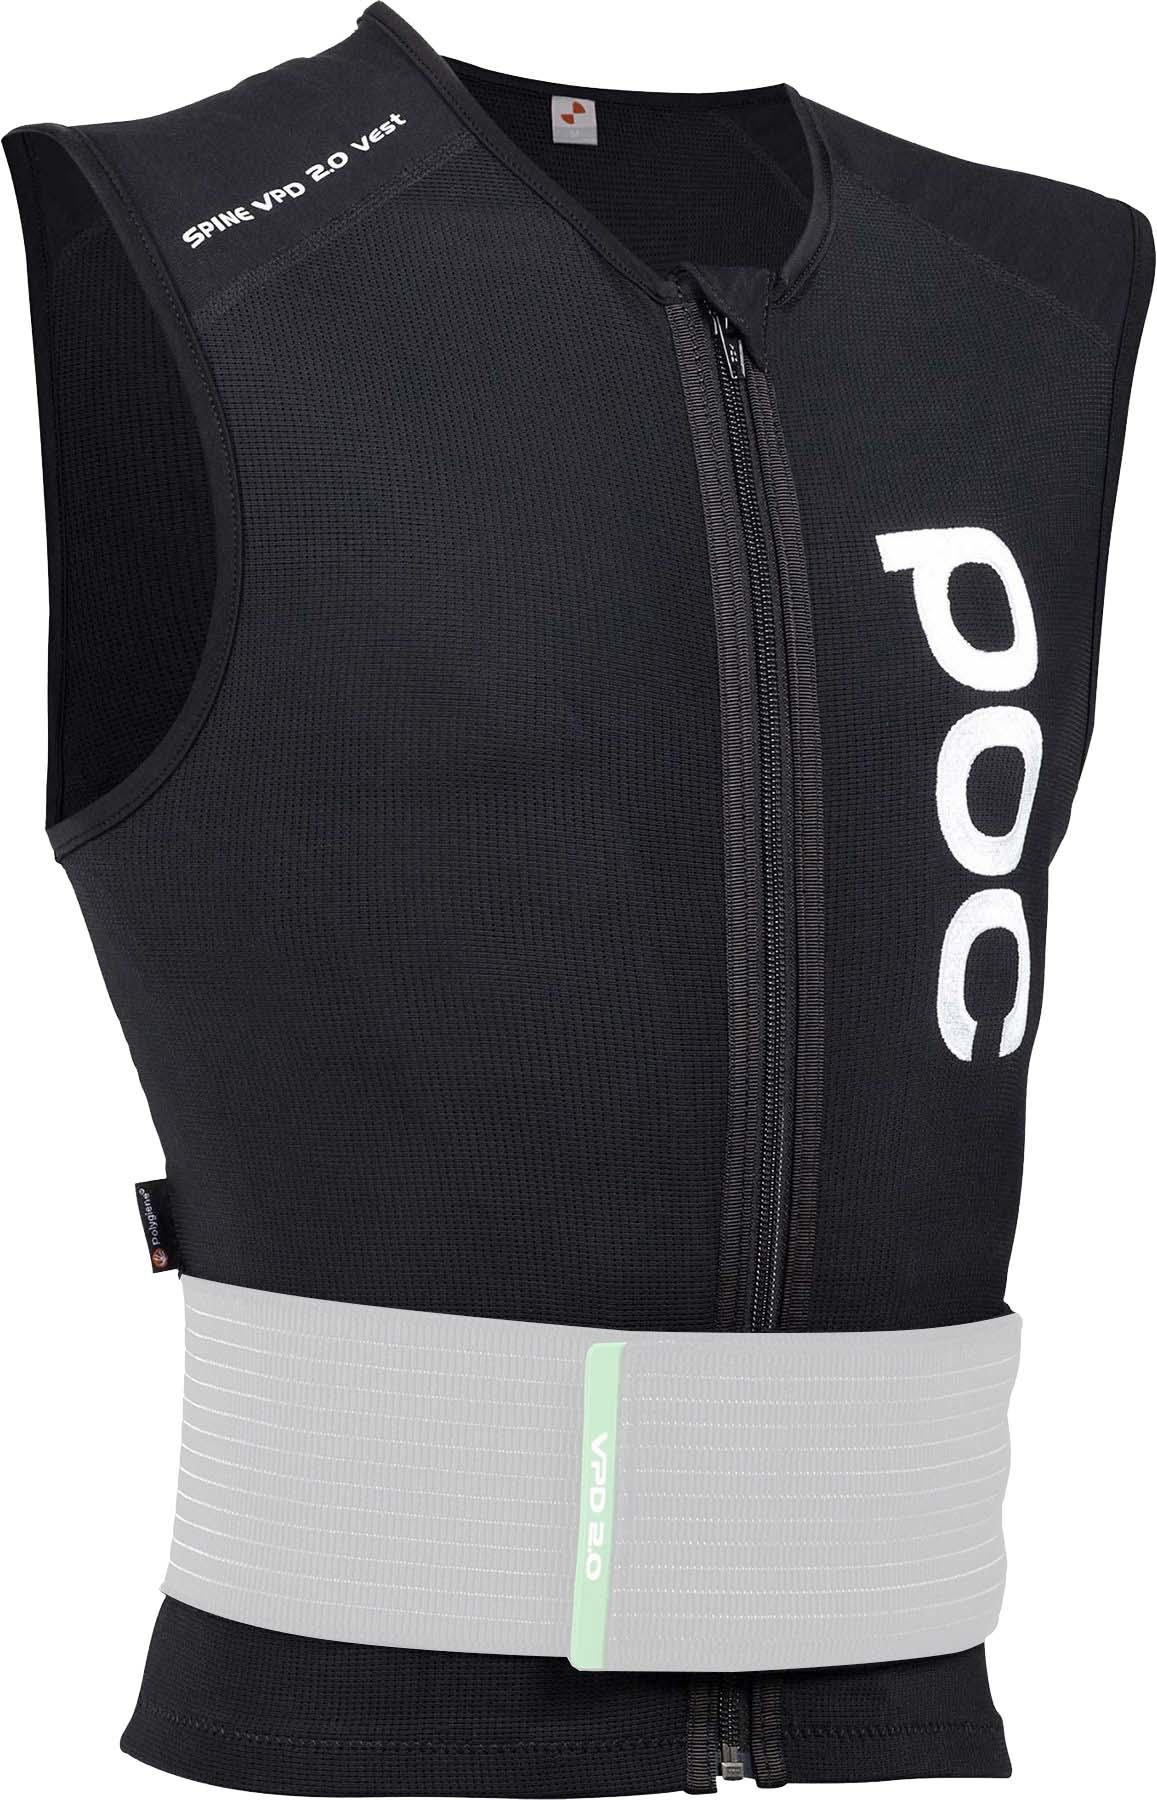 Poc Spine Vpd 2.0 Vest Body Protector - Black